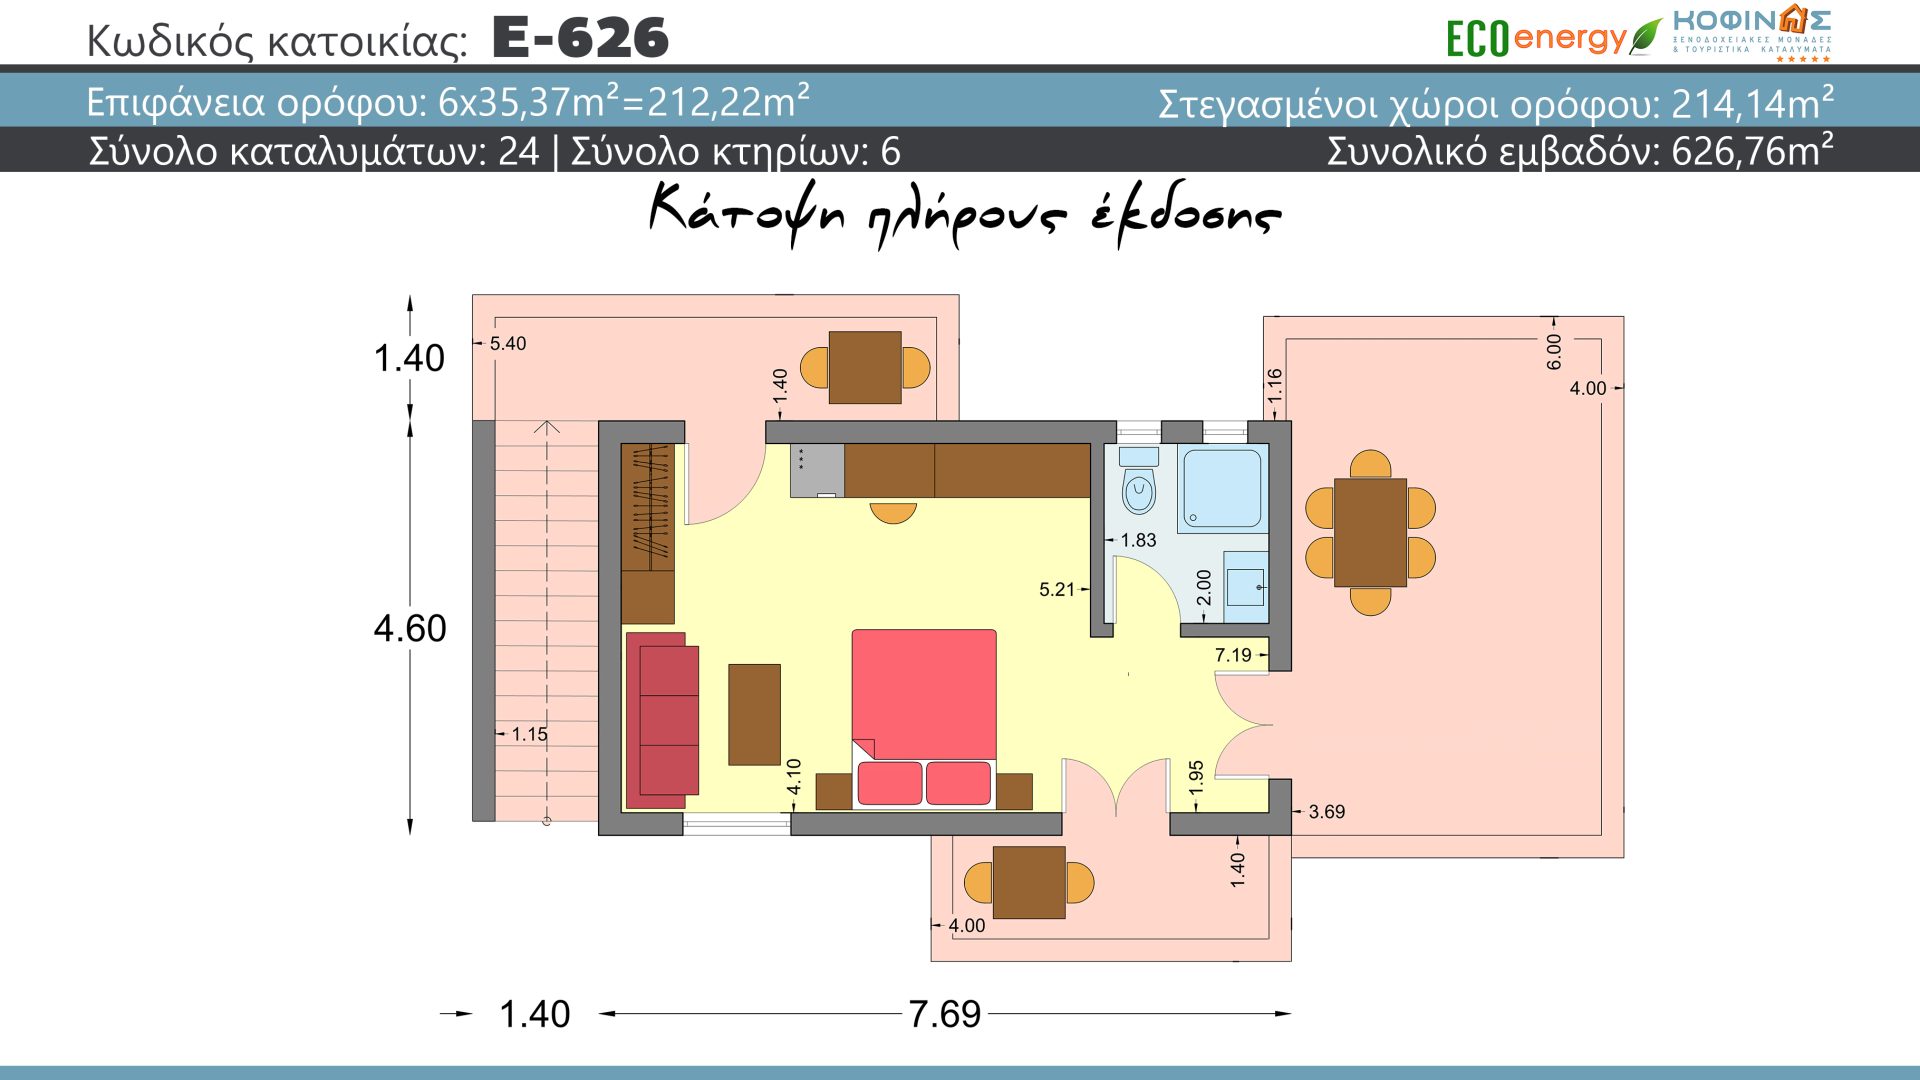 Συγκρότημα κατοικιών E-626, συνολικής επιφάνειας (18×23,03)+(6×35.37) = 626,75 τ.μ., συνολική επιφάνεια στεγασμένων χώρων 28,26 τ.μ., μπαλκόνια 214,14 τ.μ.